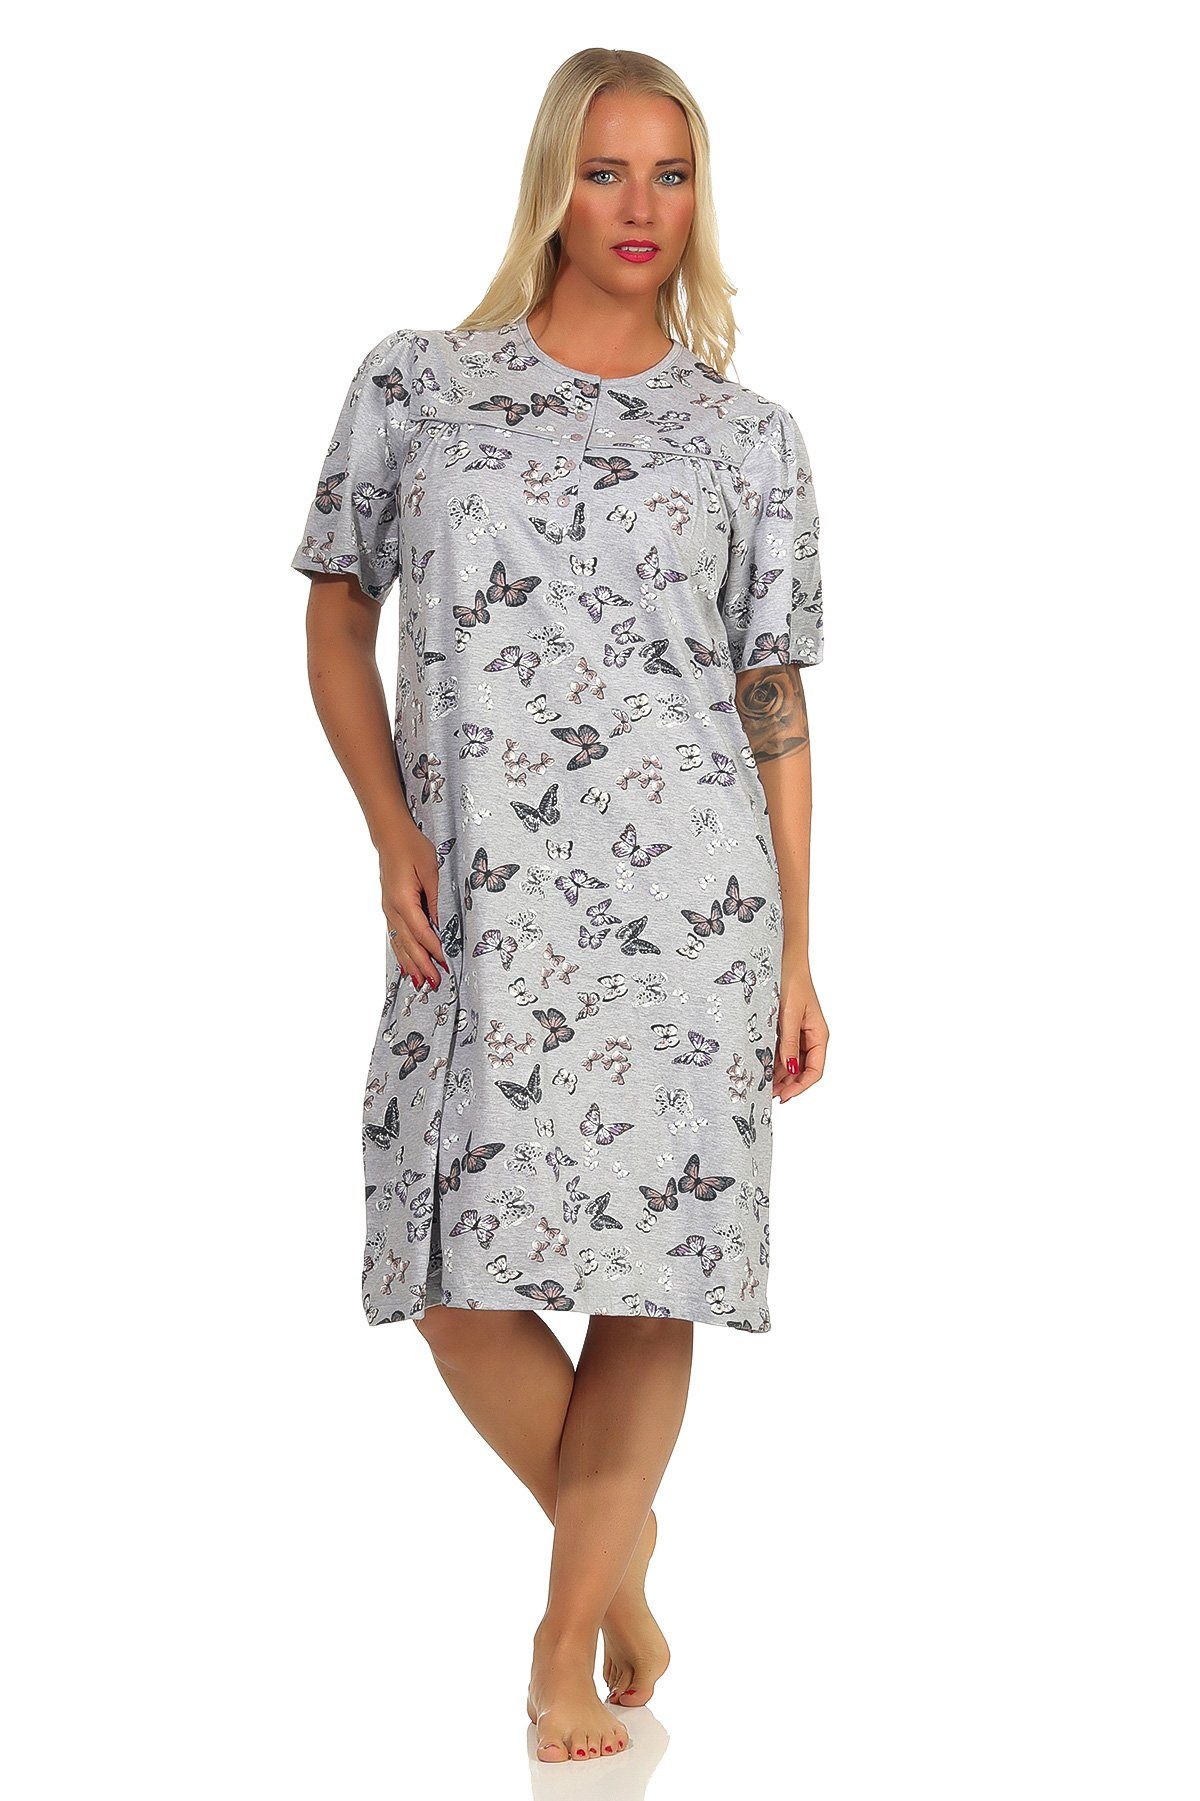 Normann Nachthemd Damen Nachthemd kurzarm Schmetterlinge Optik mit Knopfleiste am Hals grau